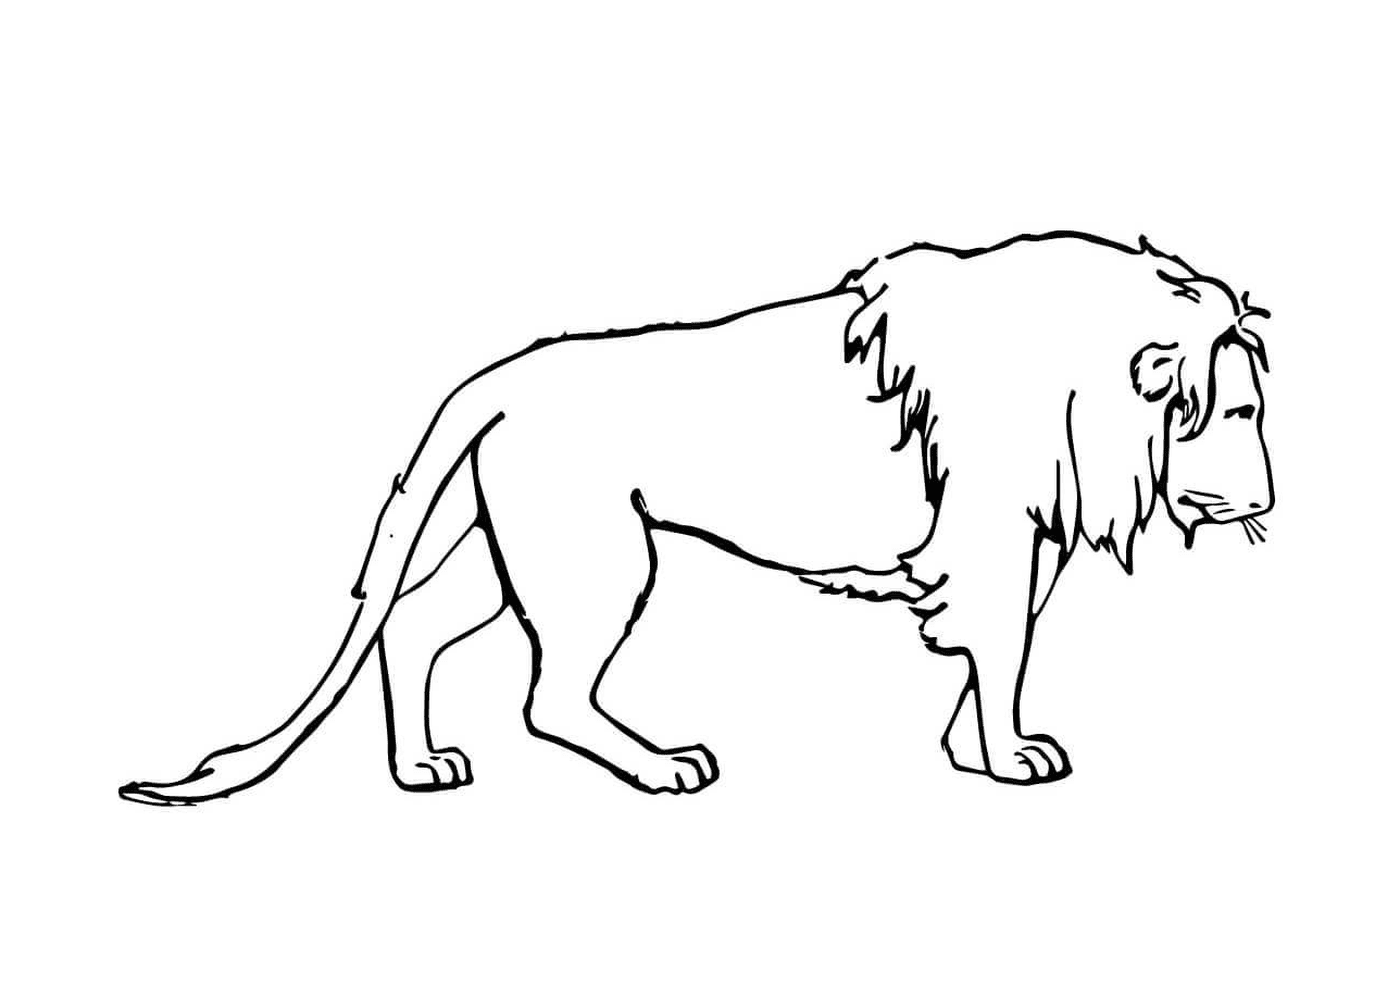  Leão triste e melancólico 